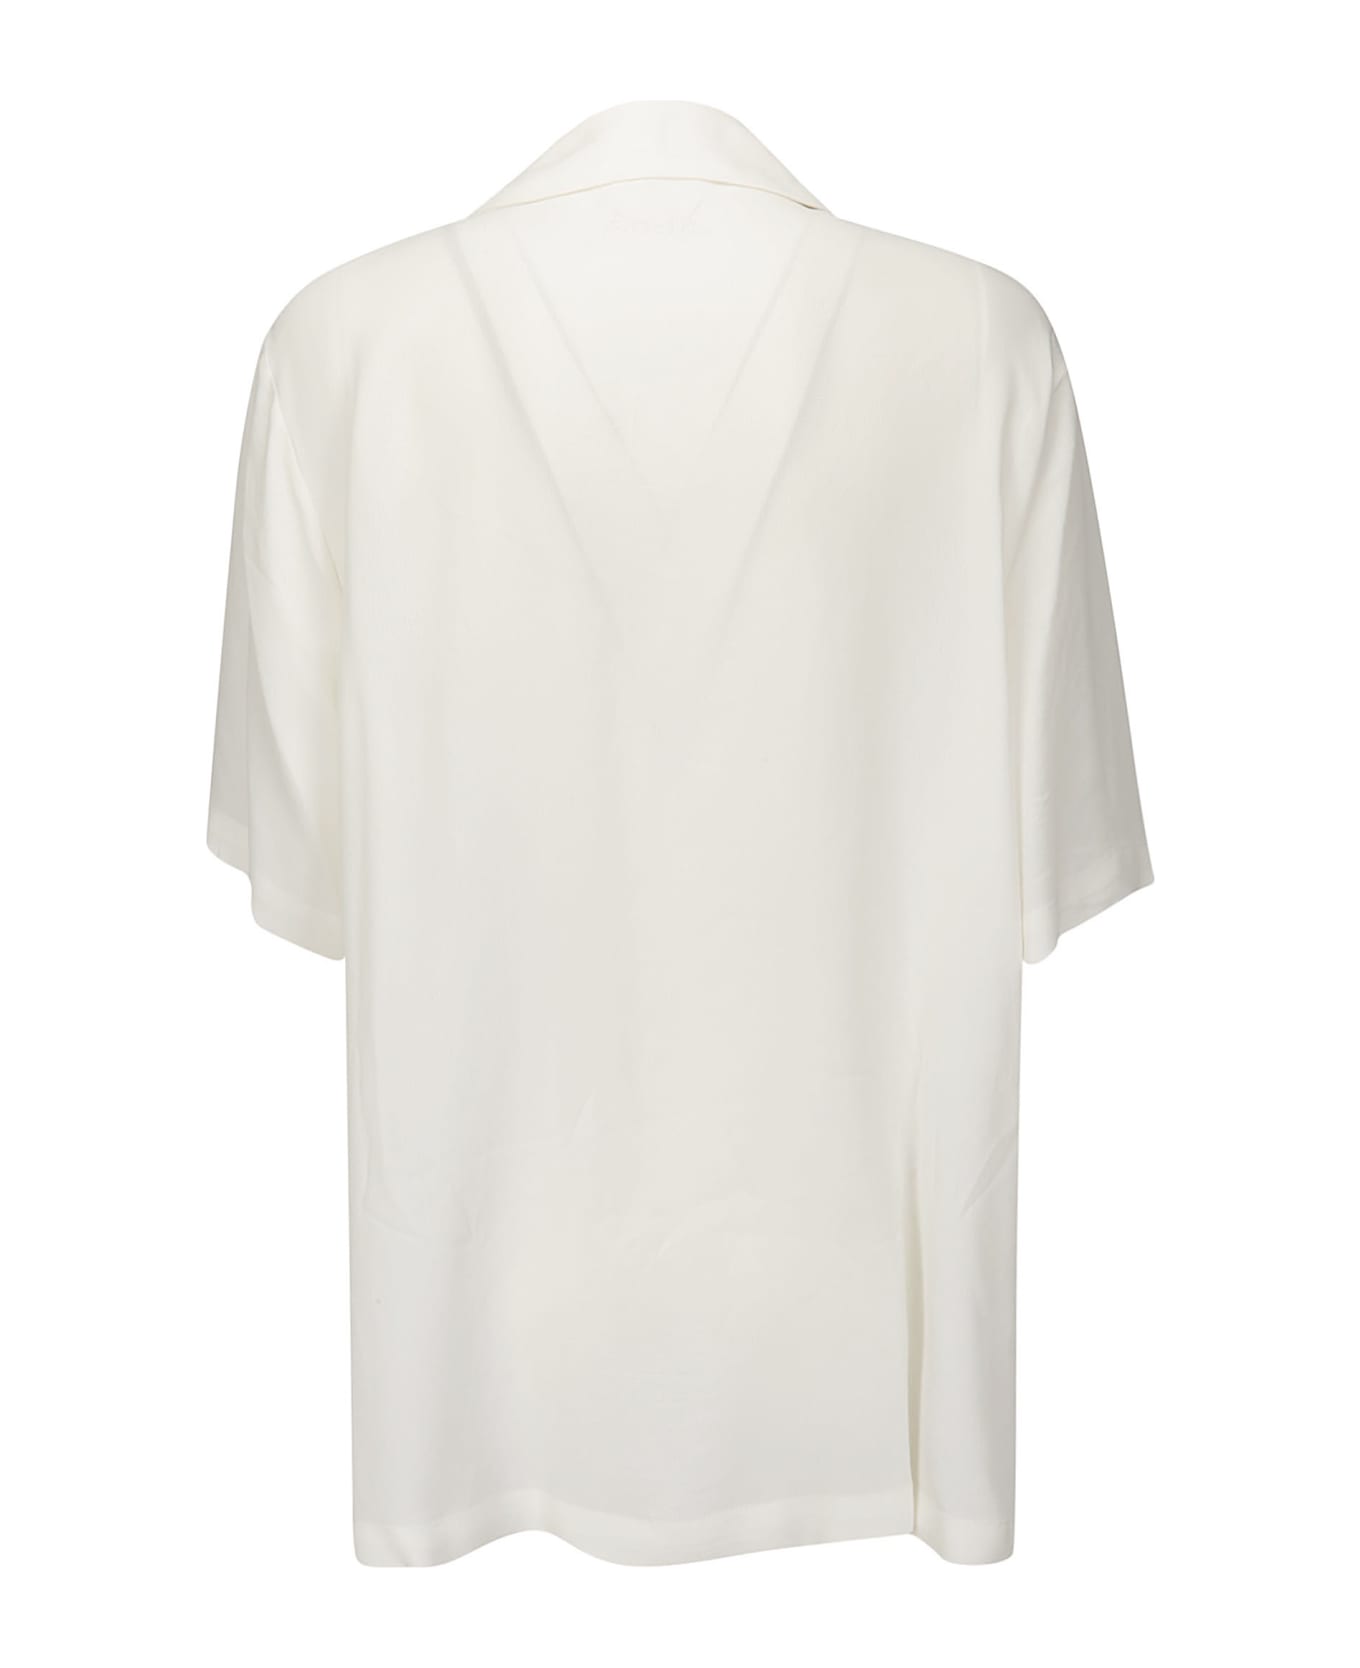 Parosh Shirt - WHITE シャツ